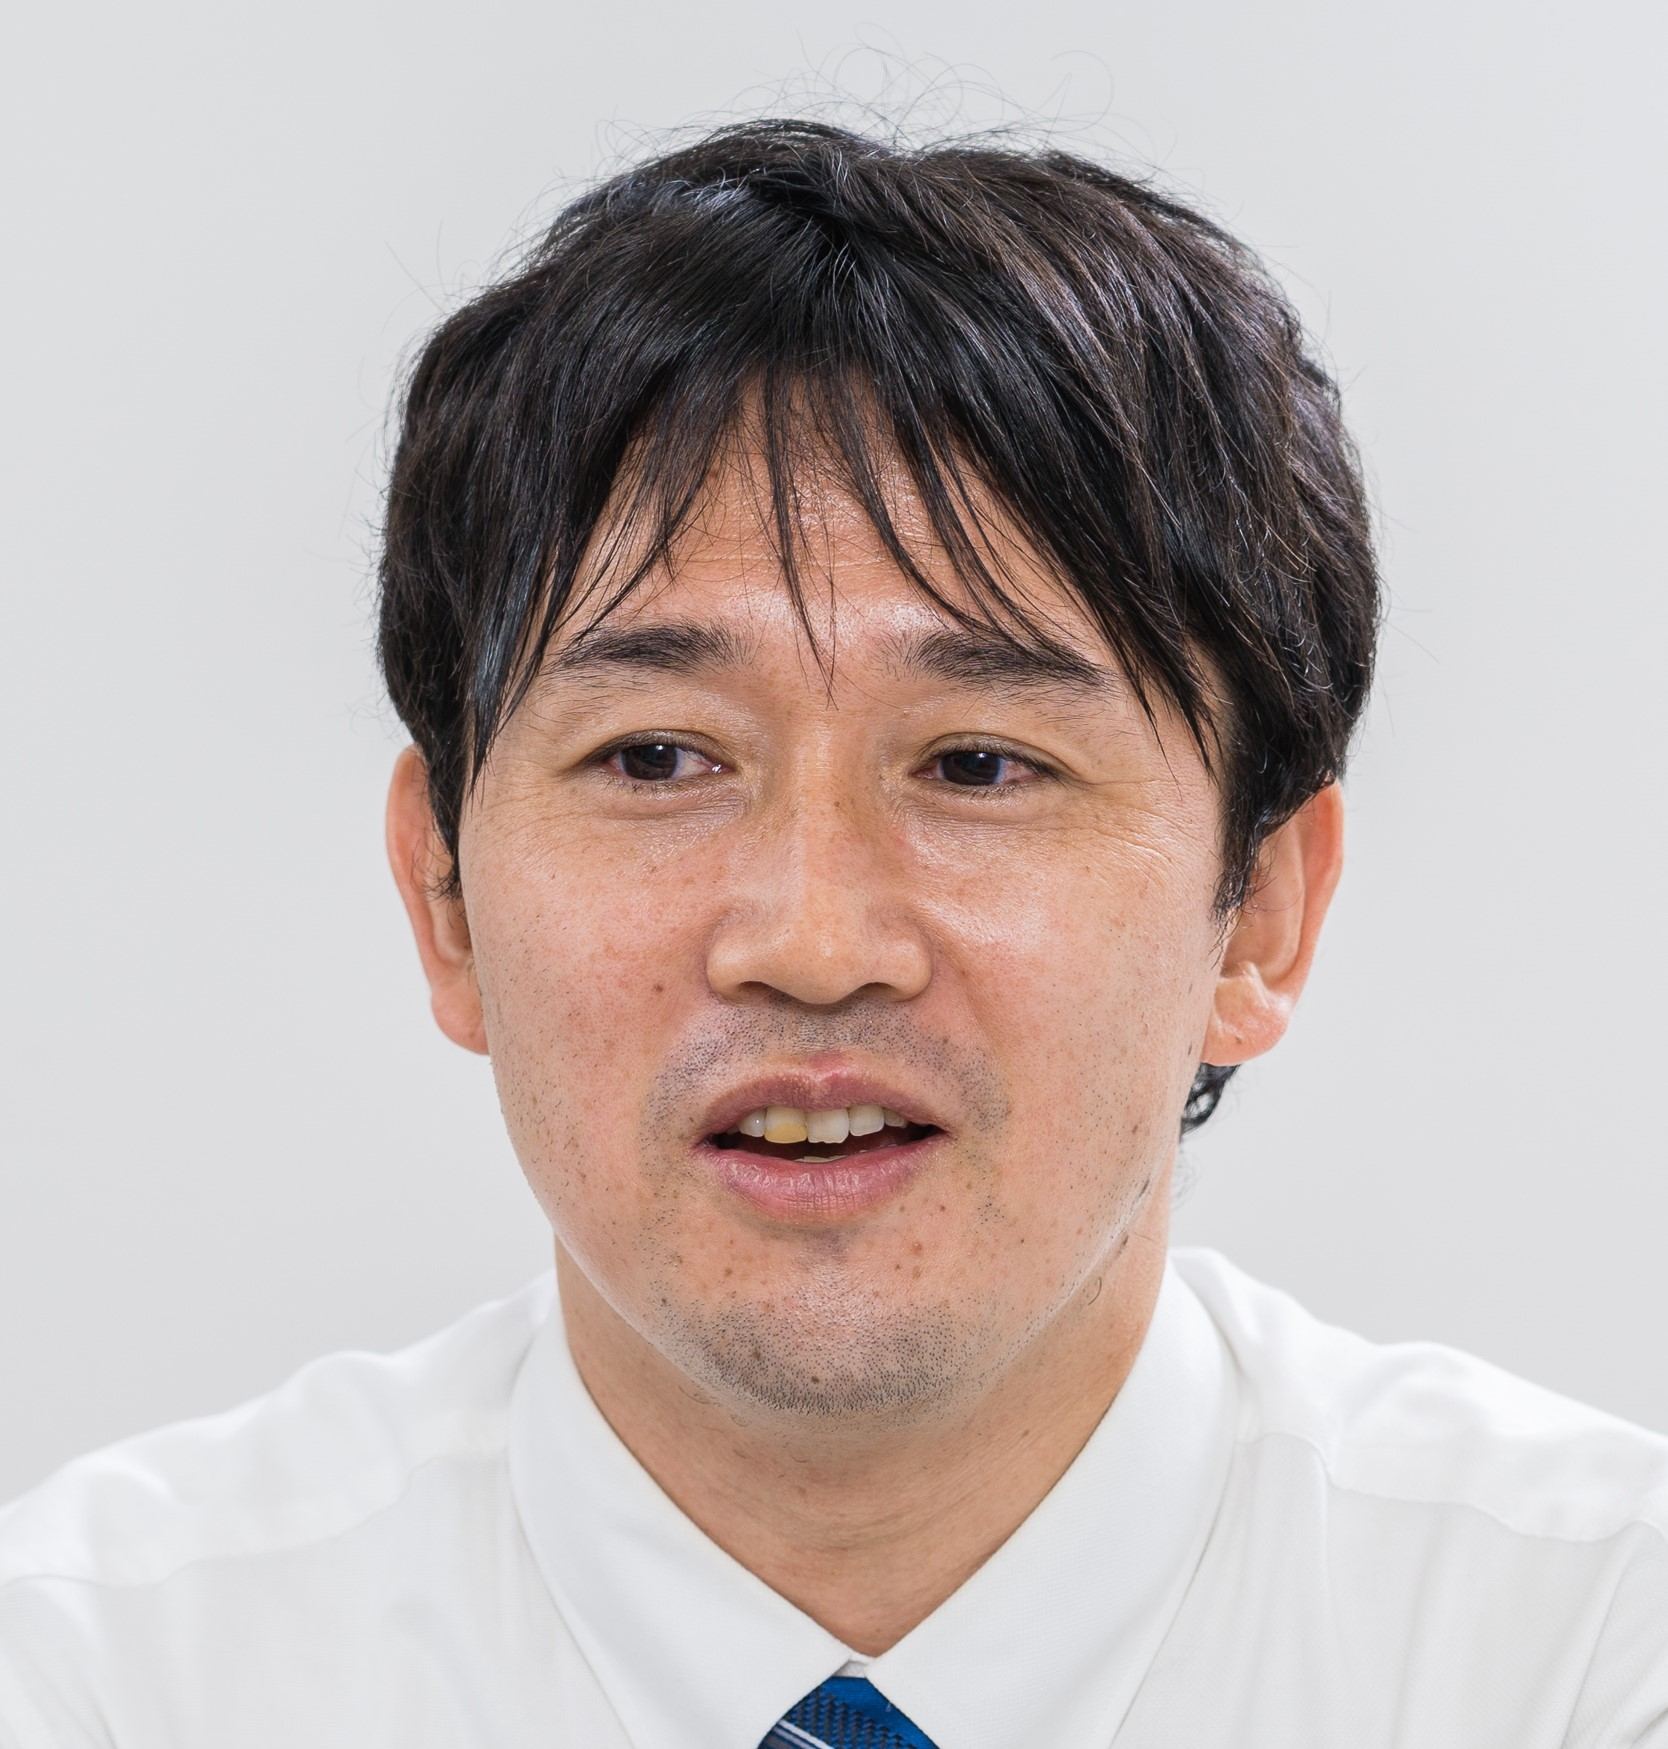 Hiromichi Watanabe